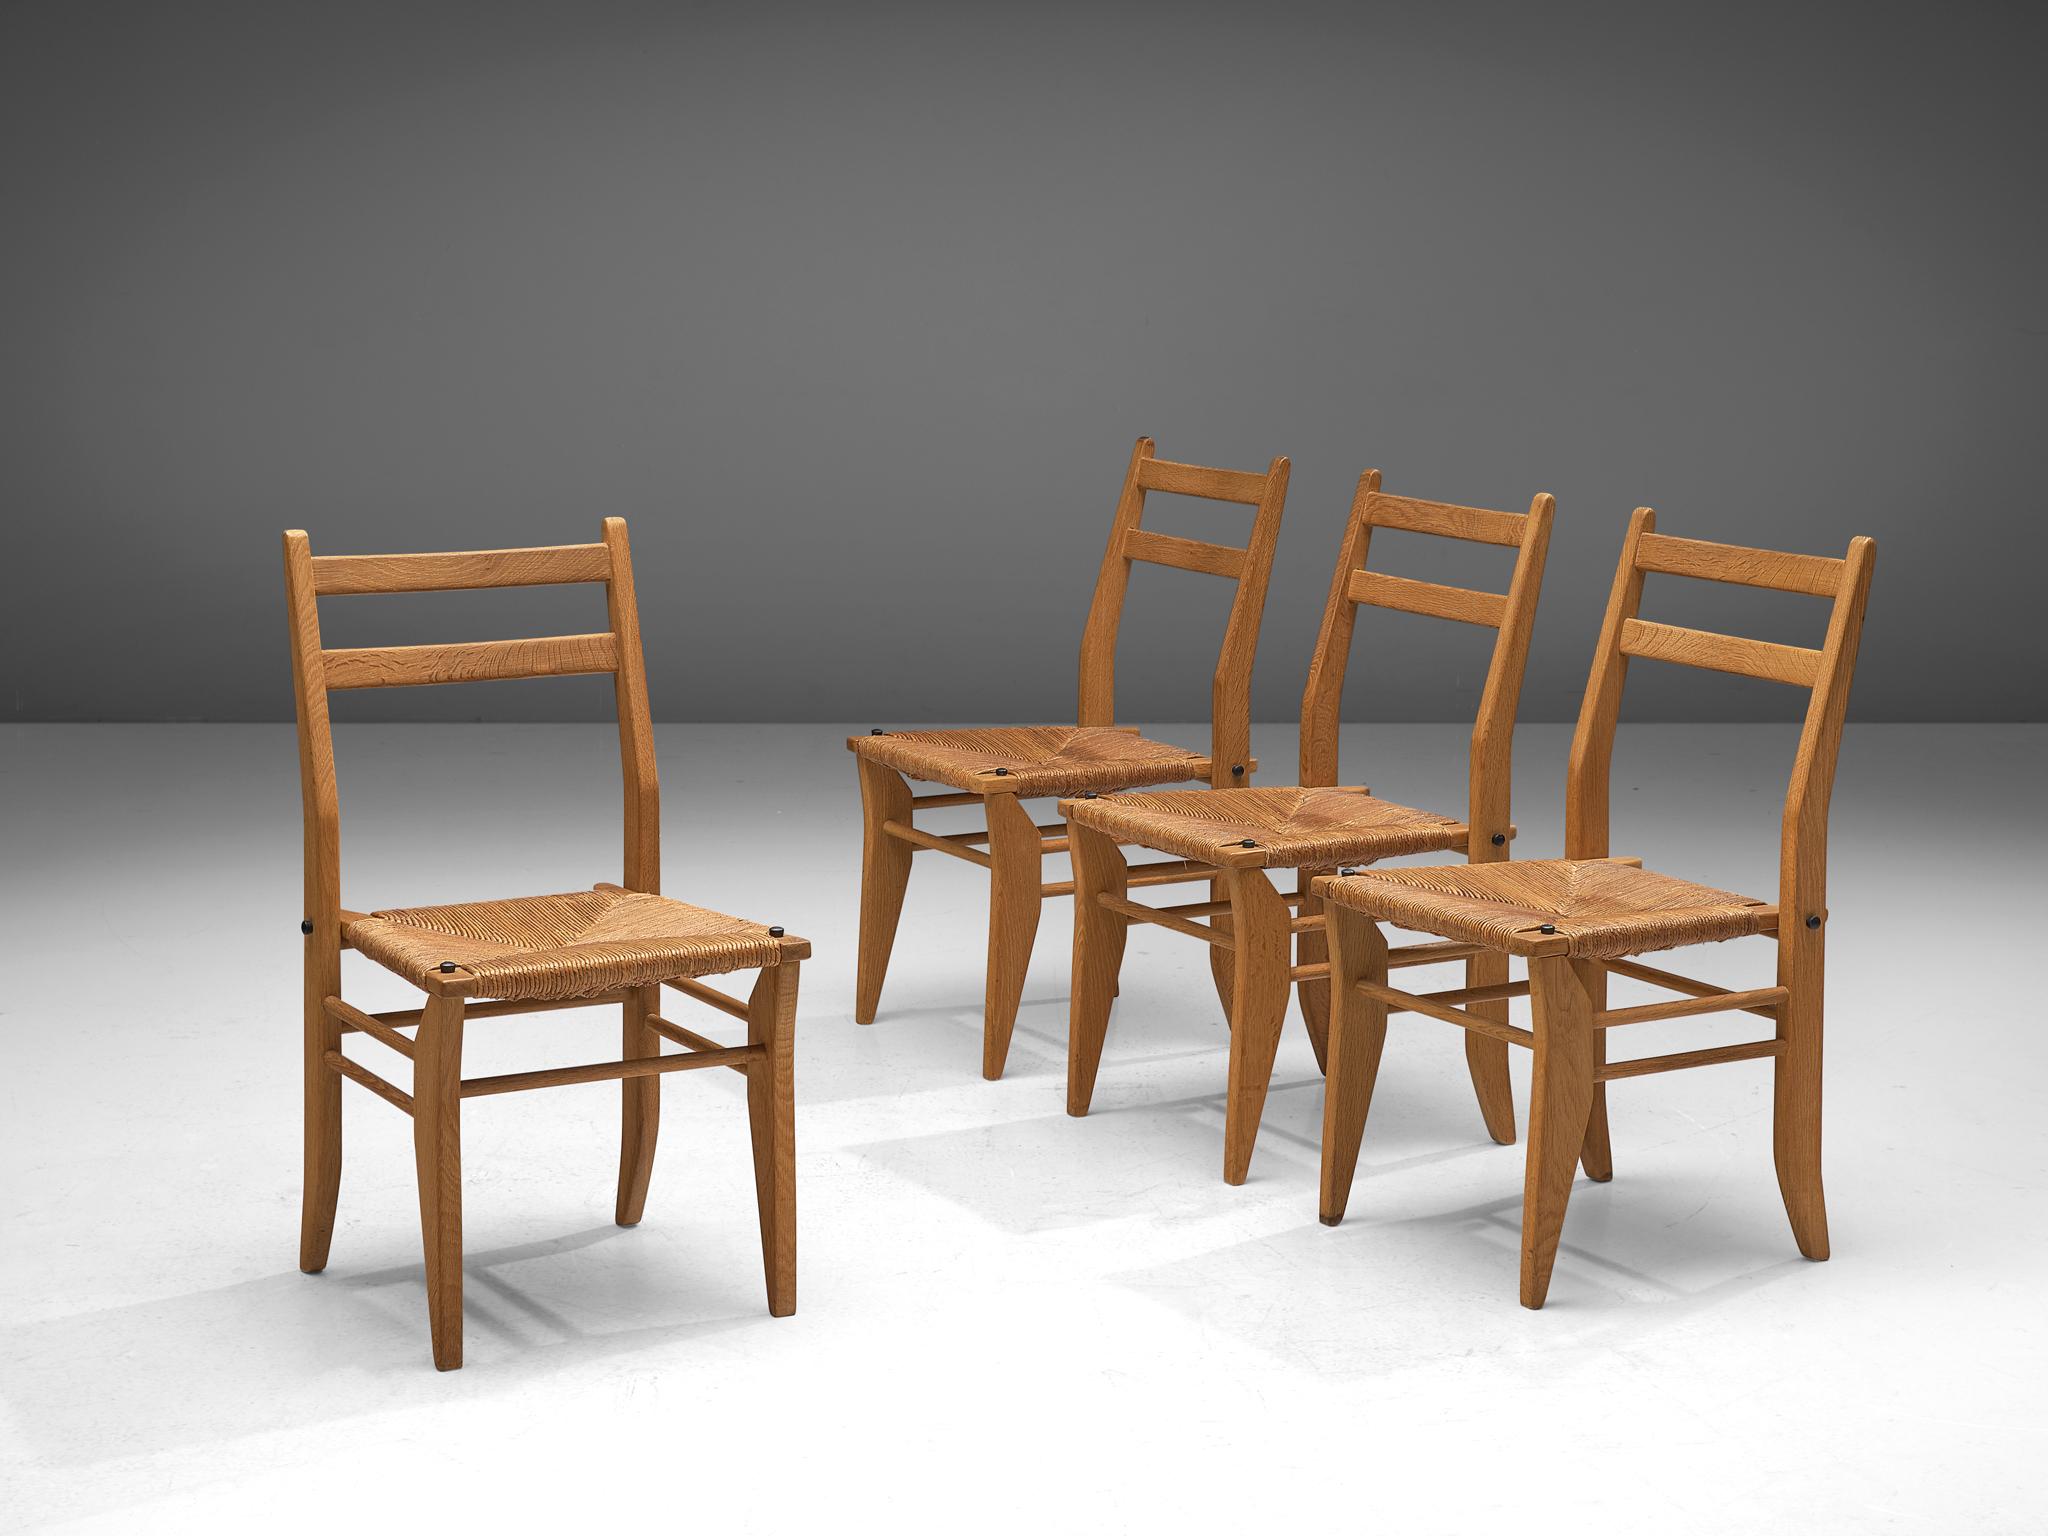 Guillerme & Chambron, ensemble de quatre chaises de salle à manger, chêne et corde, France, années 1960.

Ensemble de quatre chaises de salle à manger en chêne massif par Guillerme et Chambron. Ces chaises présentent un dossier modeste qui est